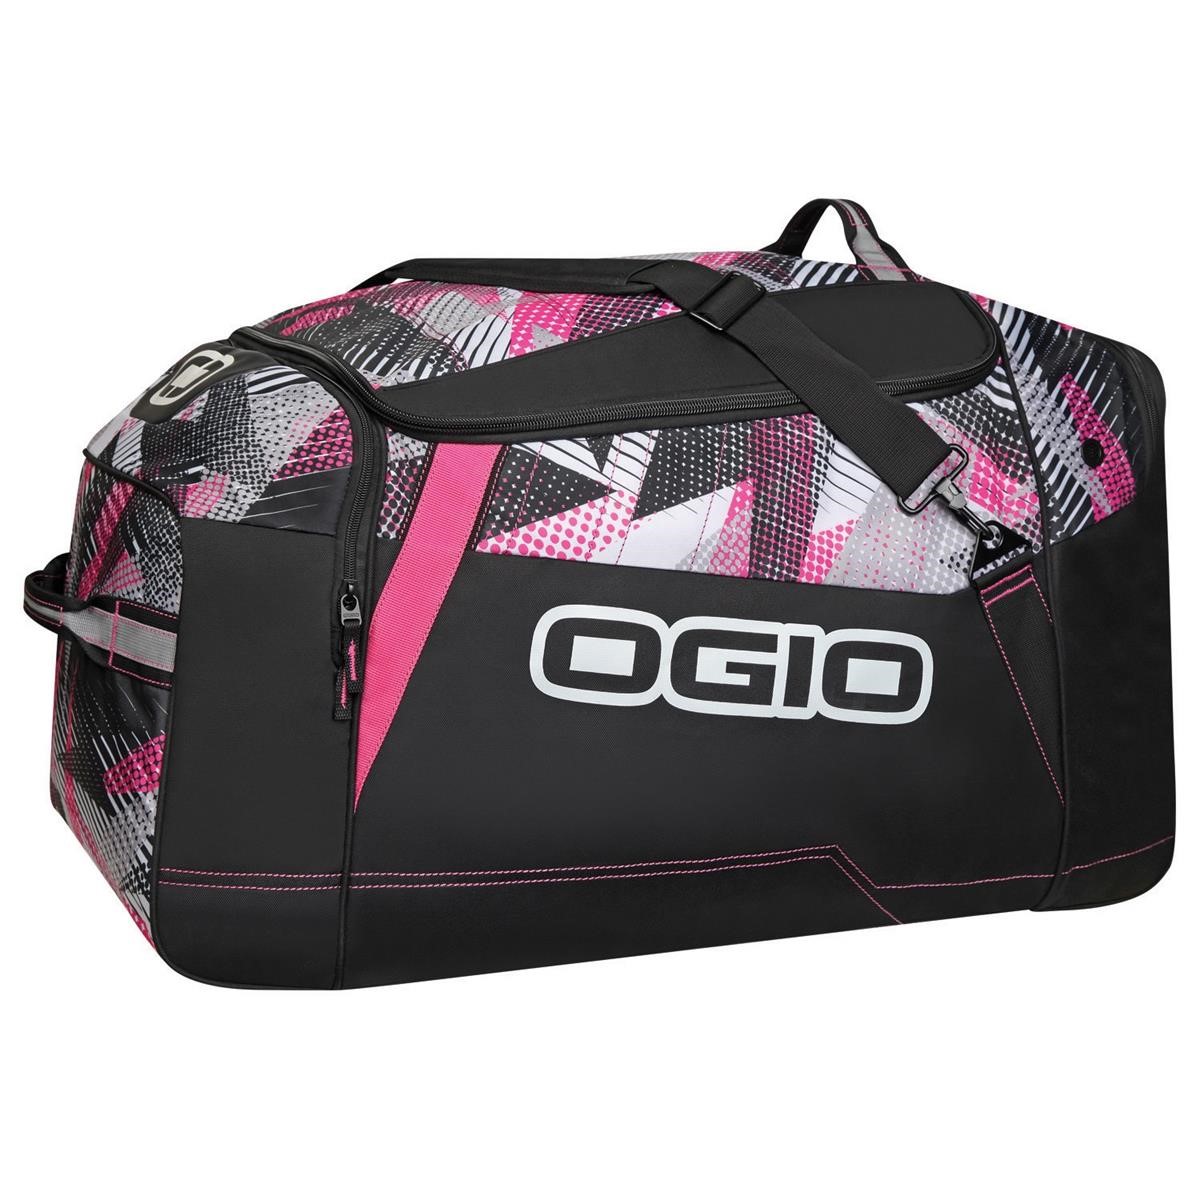 Ogio Travel Bag Slayer Bolt, 125 Liter